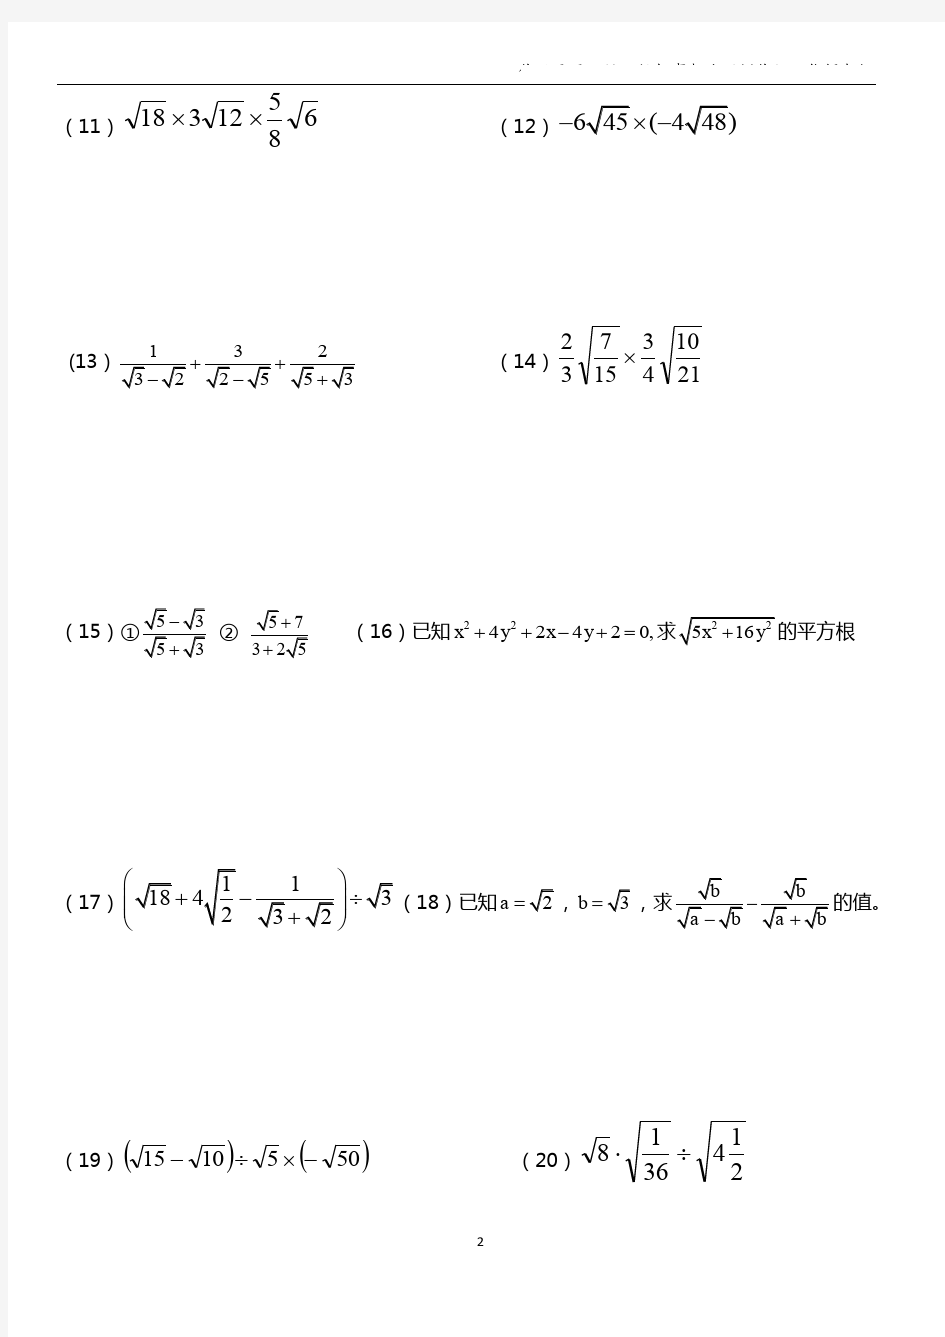 二次根式计算题100道.pdf